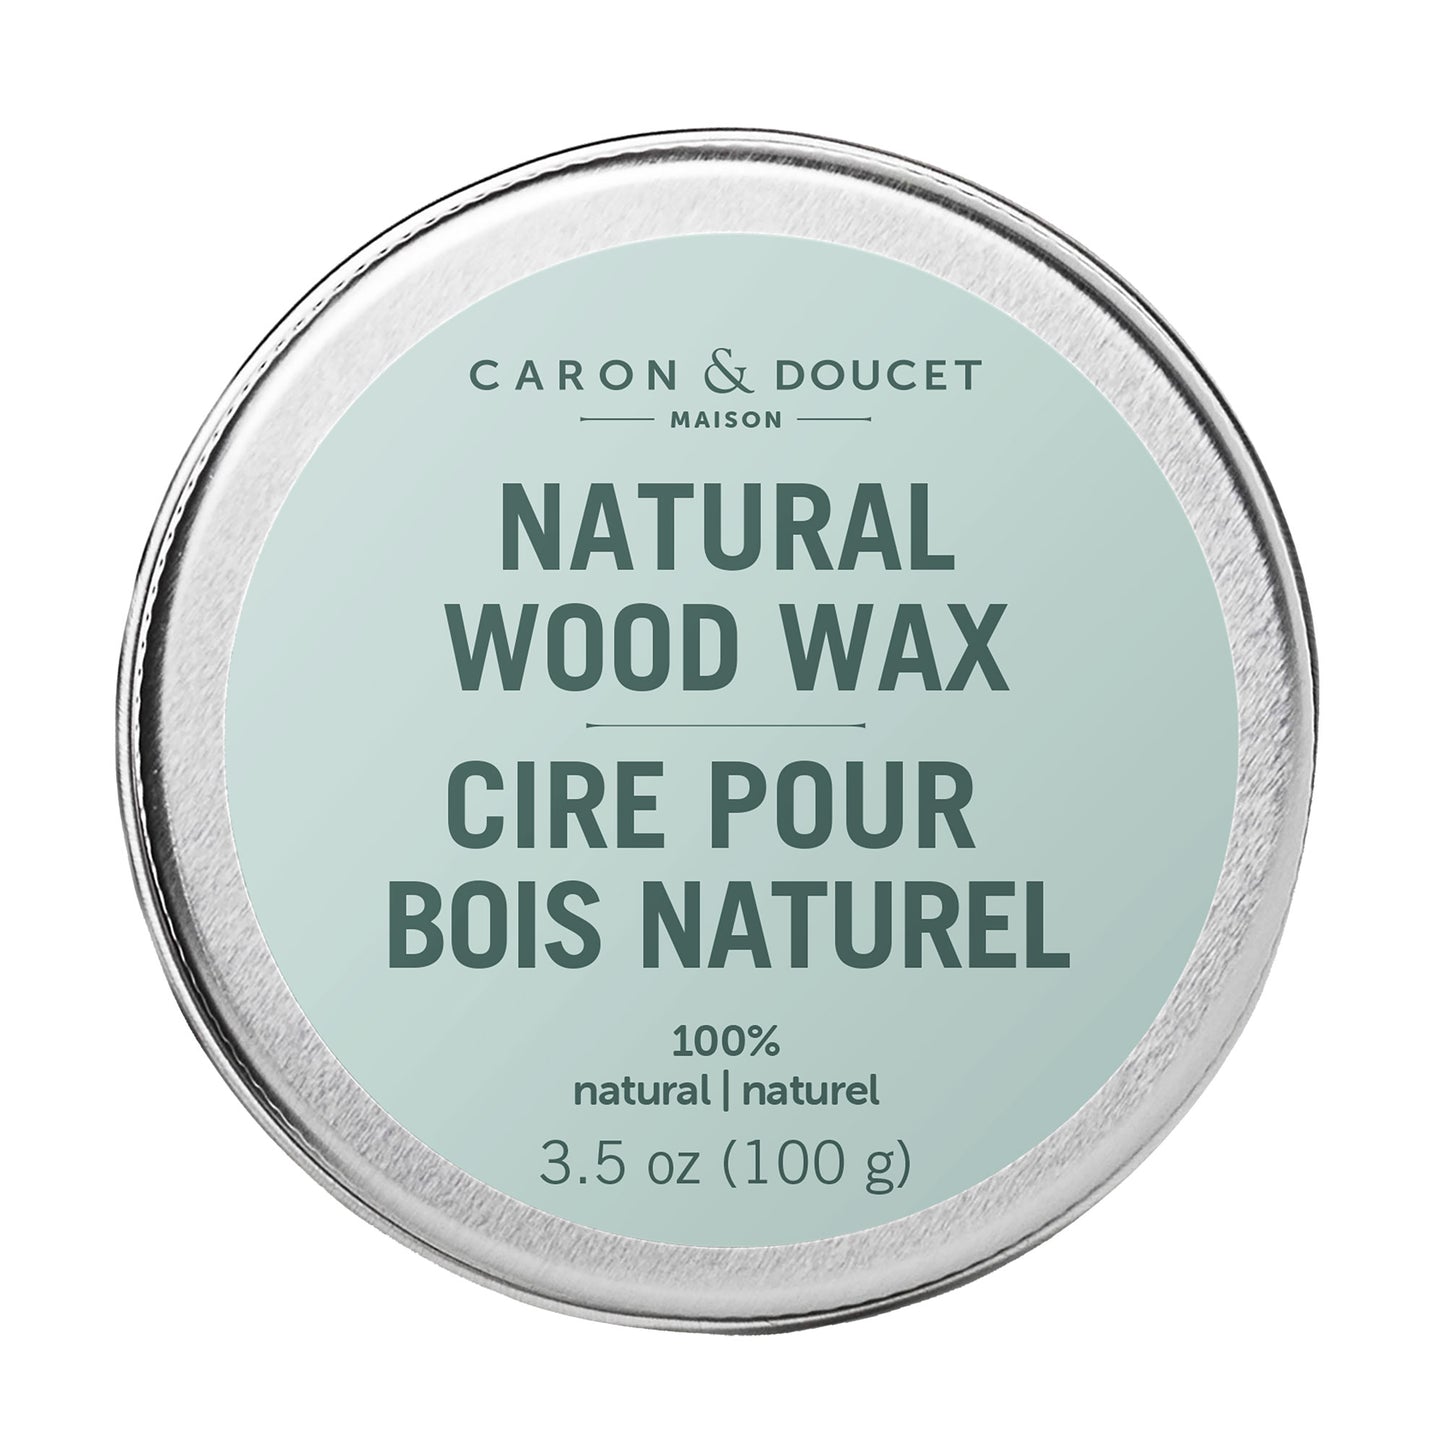 Caron & Doucet Natural Wood Wax